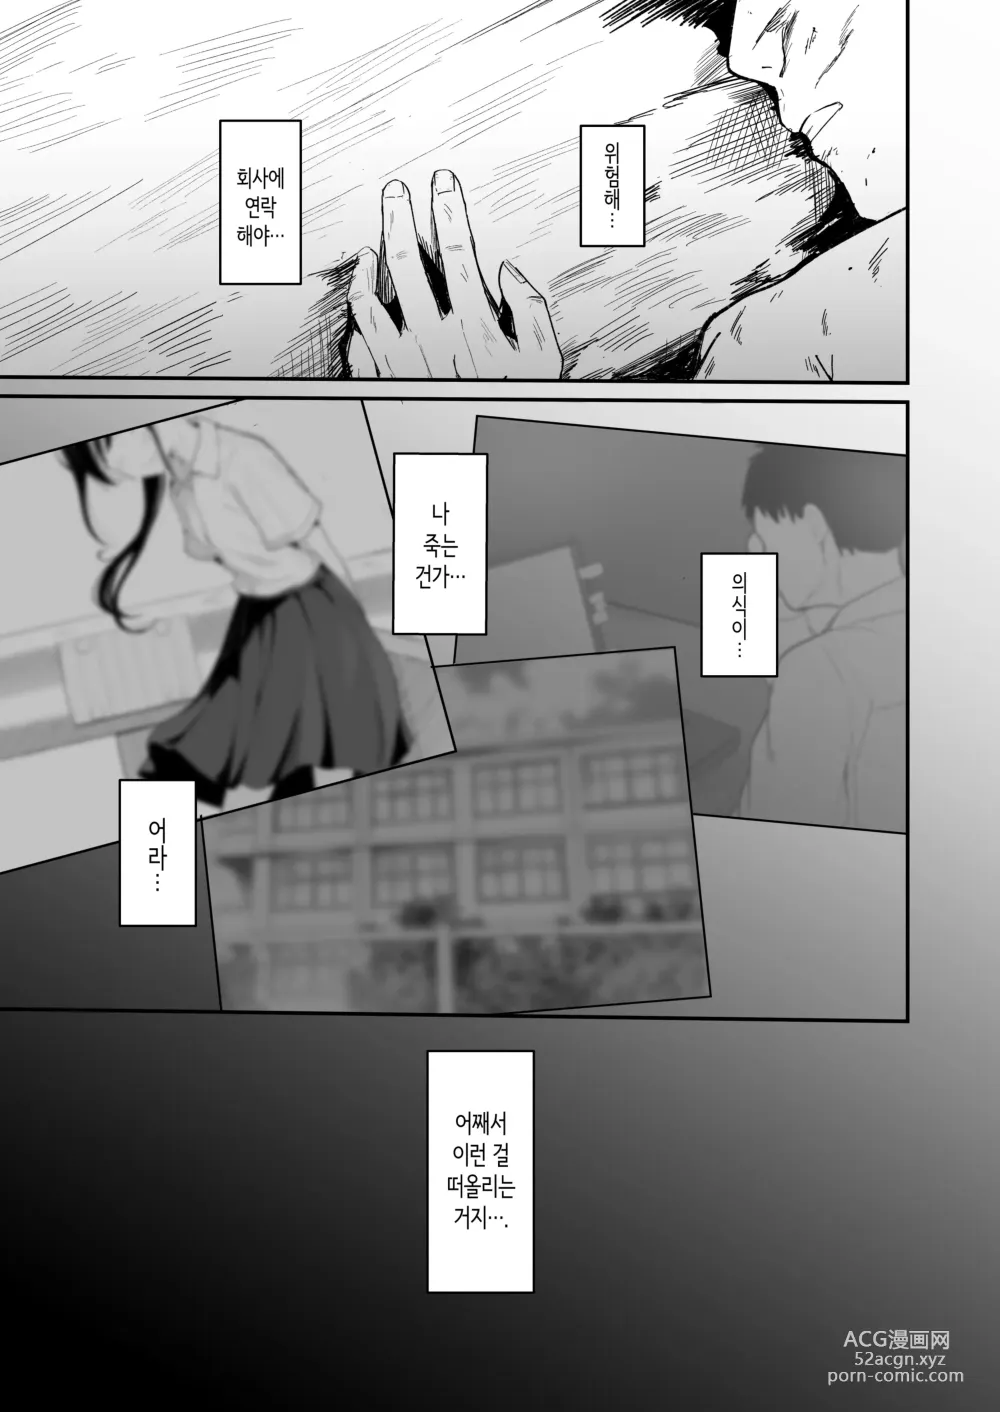 Page 4 of doujinshi 청춘을 재시작할 수 있다면 이번에야말로 좋아했던 동급생과 사귀어서 반드시 미친듯이 섹스하고 싶다.